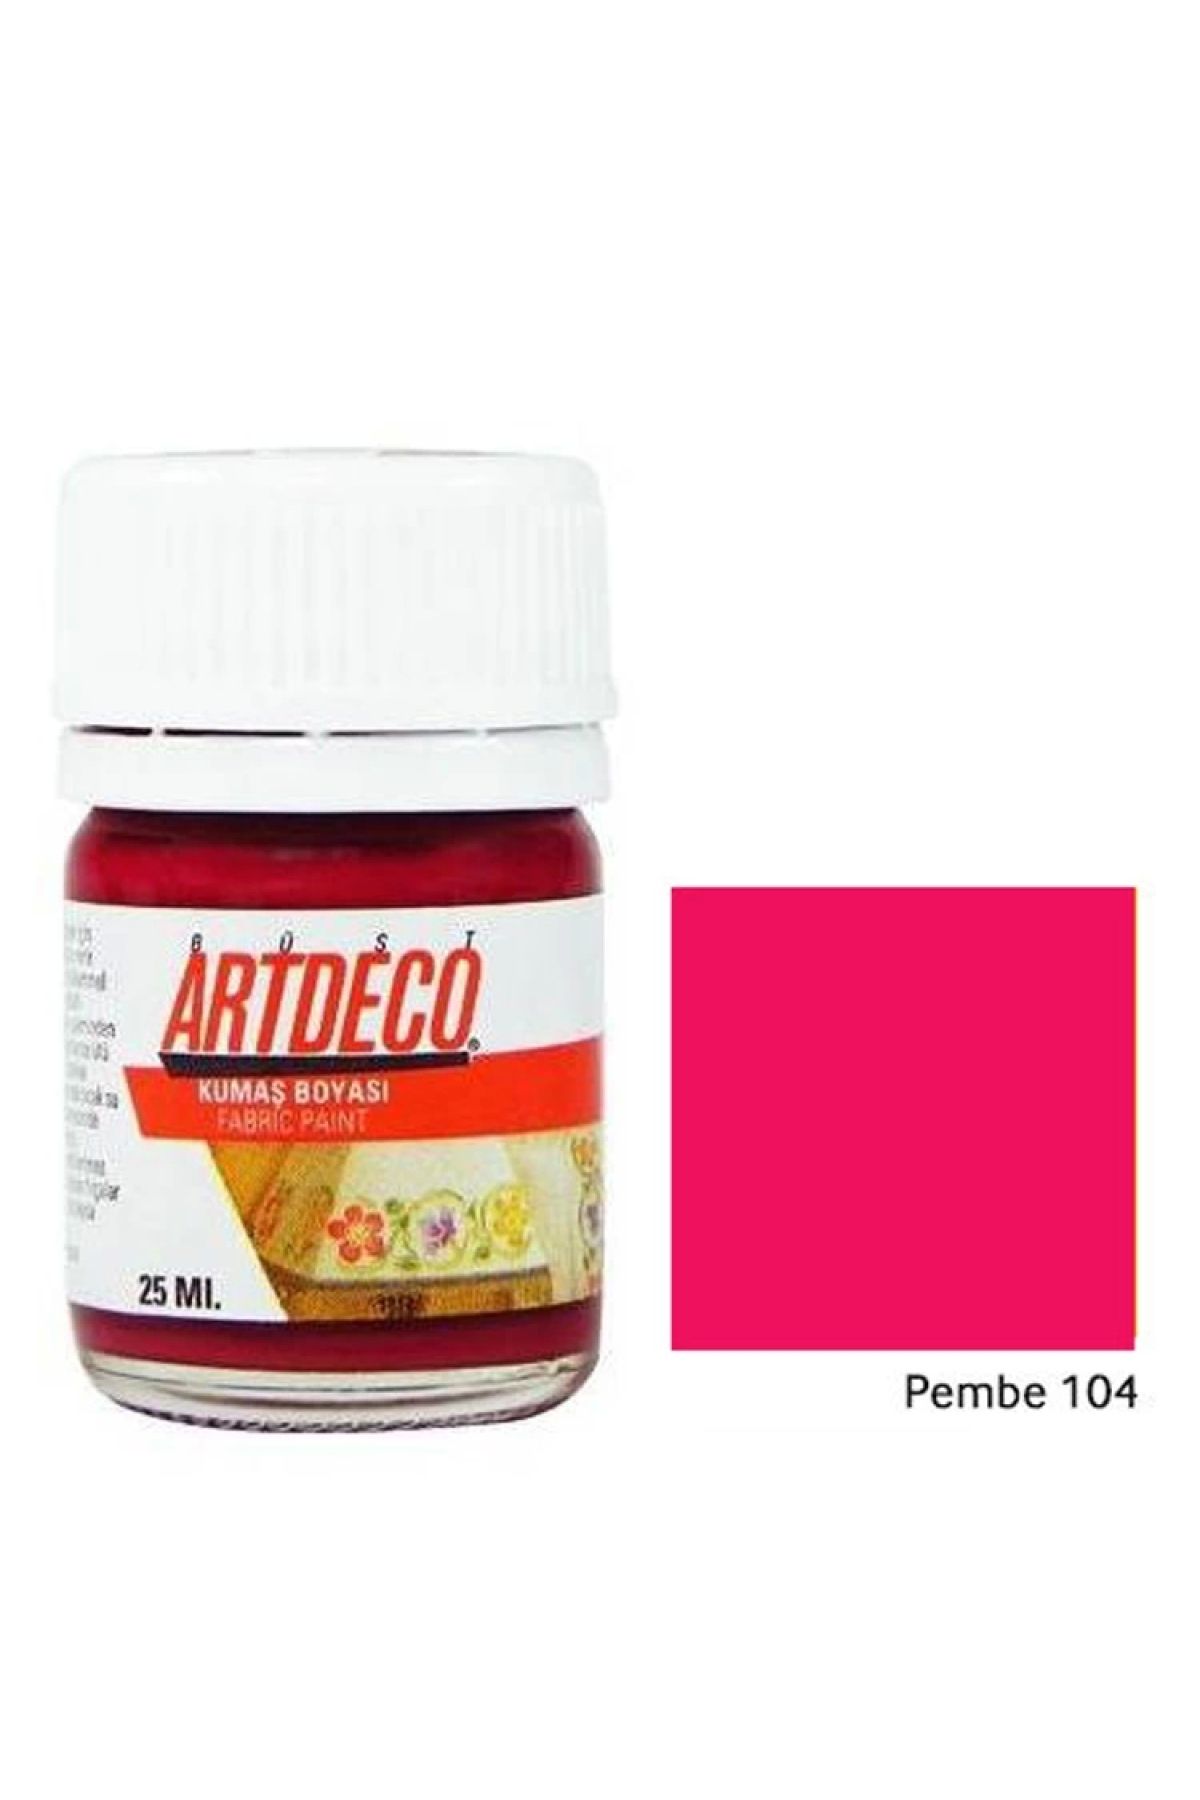 Artdeco Kumaş Boyası 25 Ml. Pink Y-010a-104